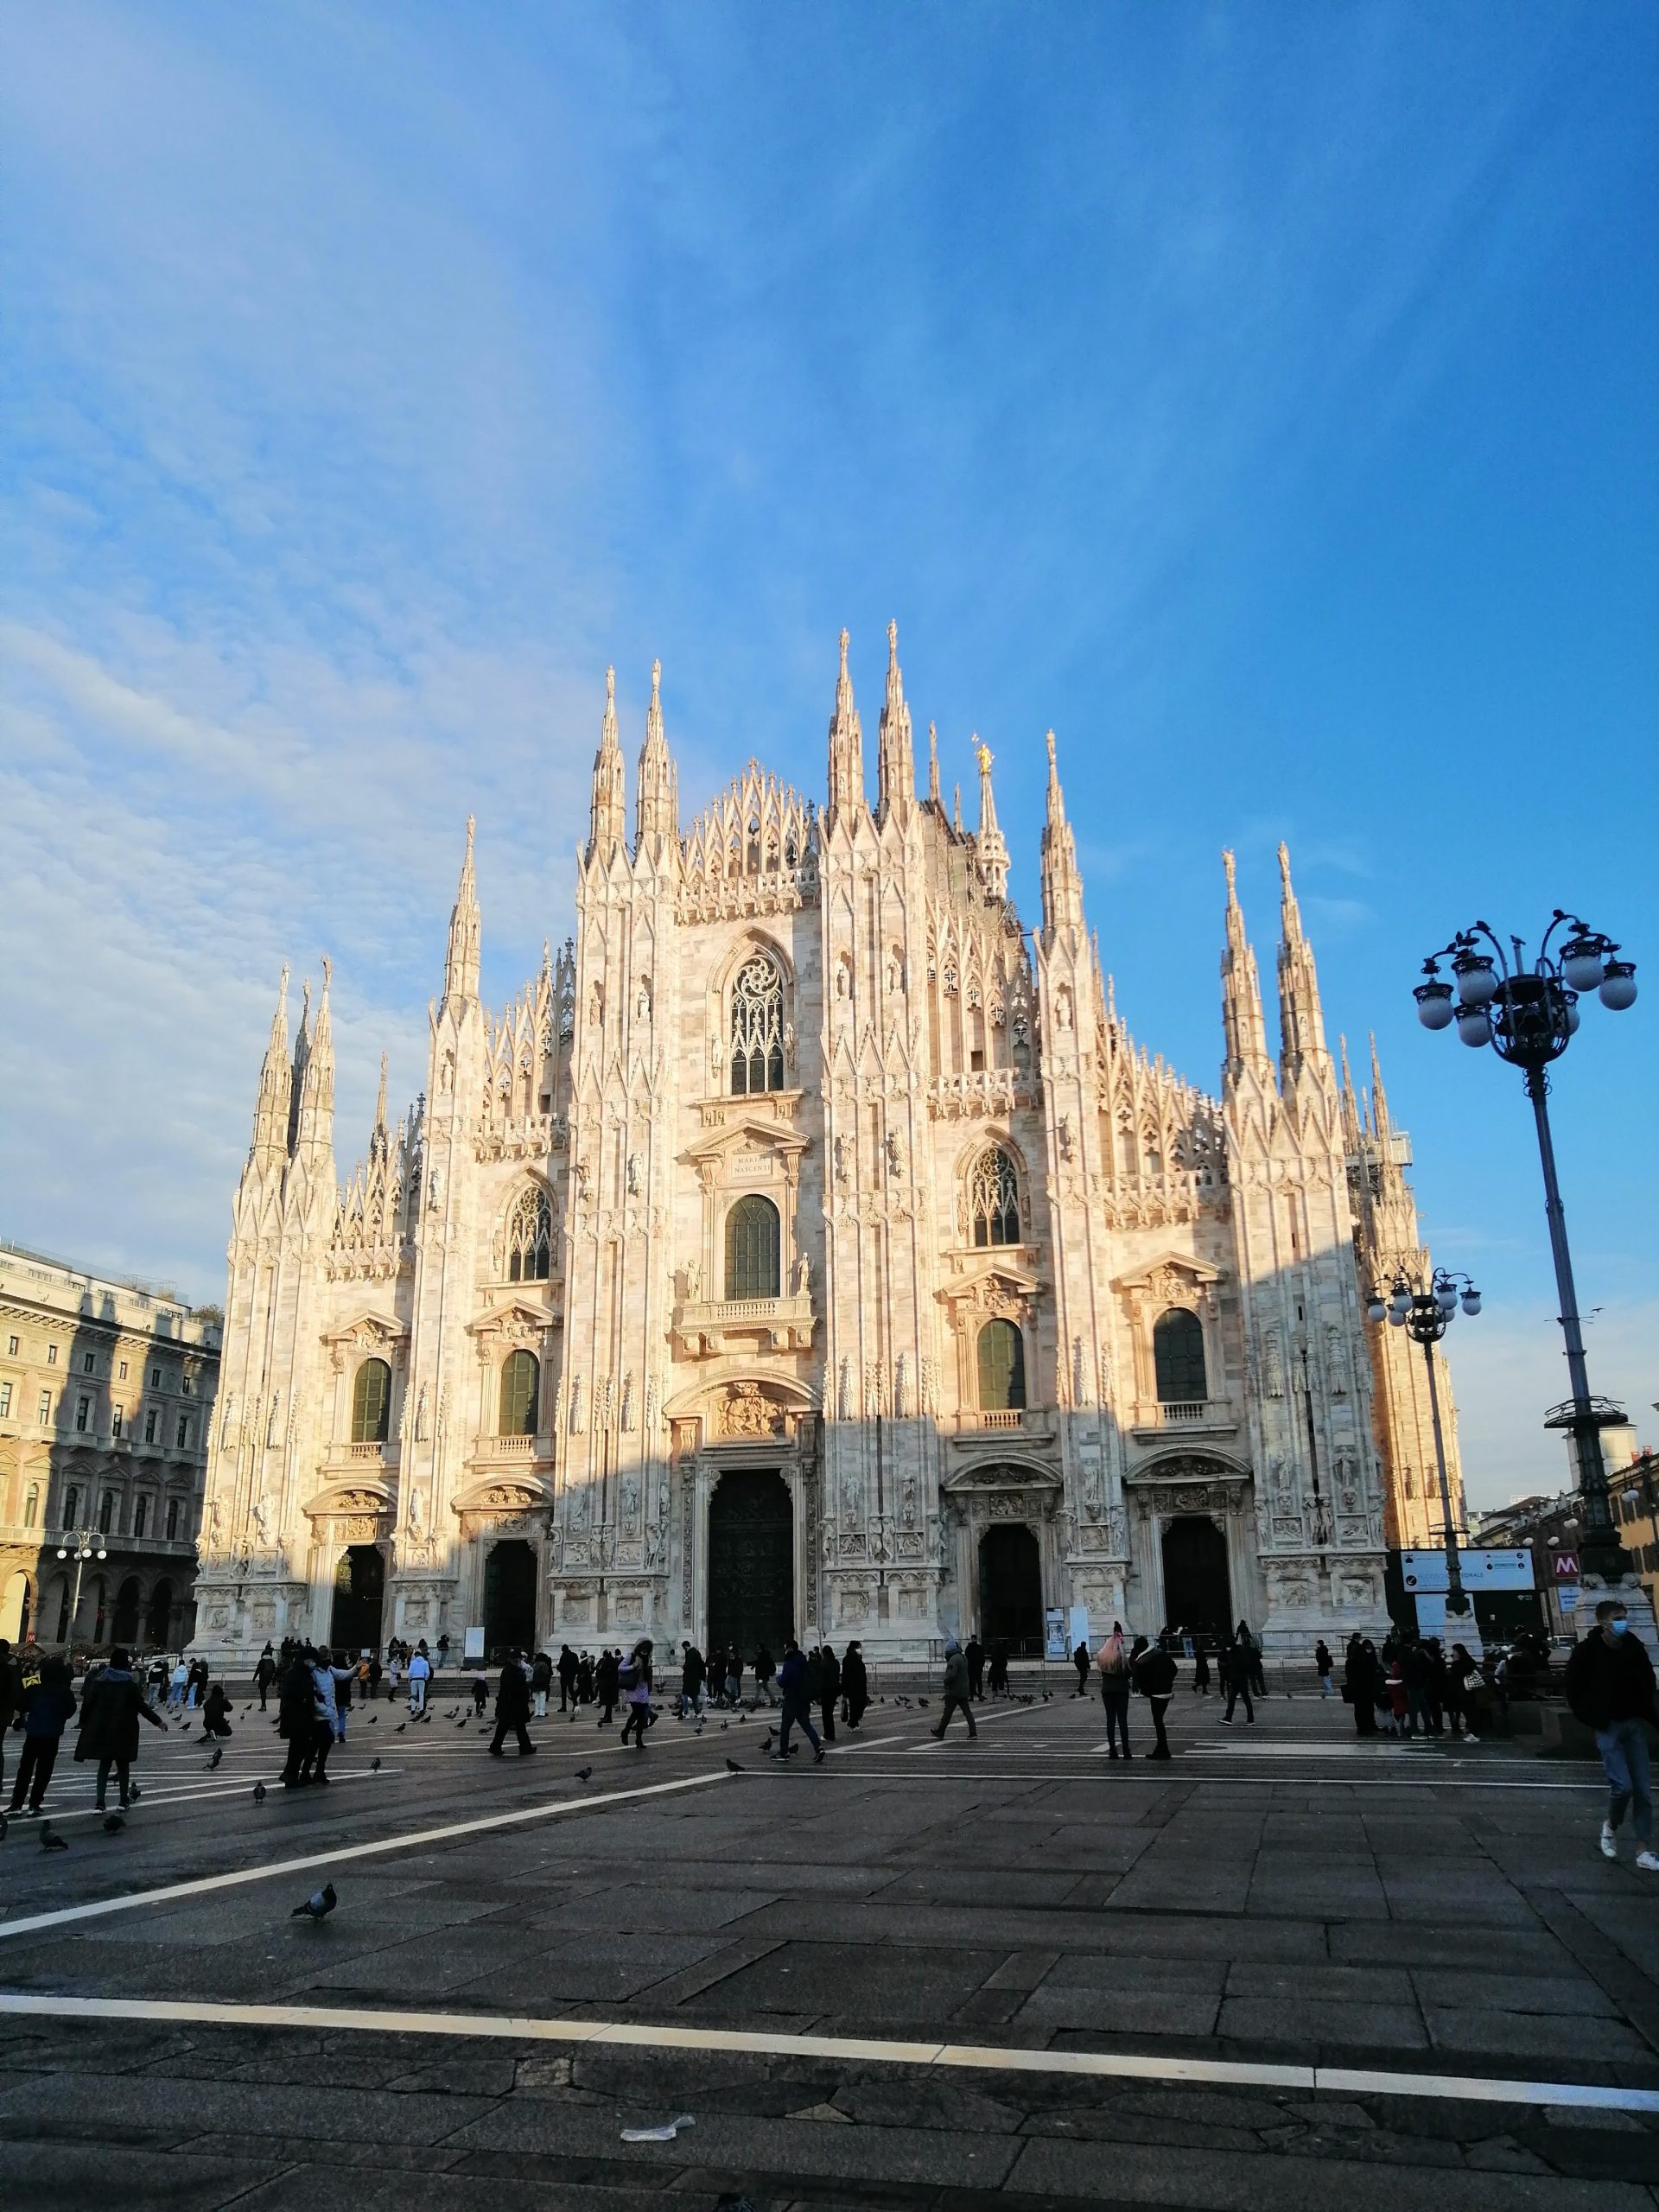 Duomo de Milano